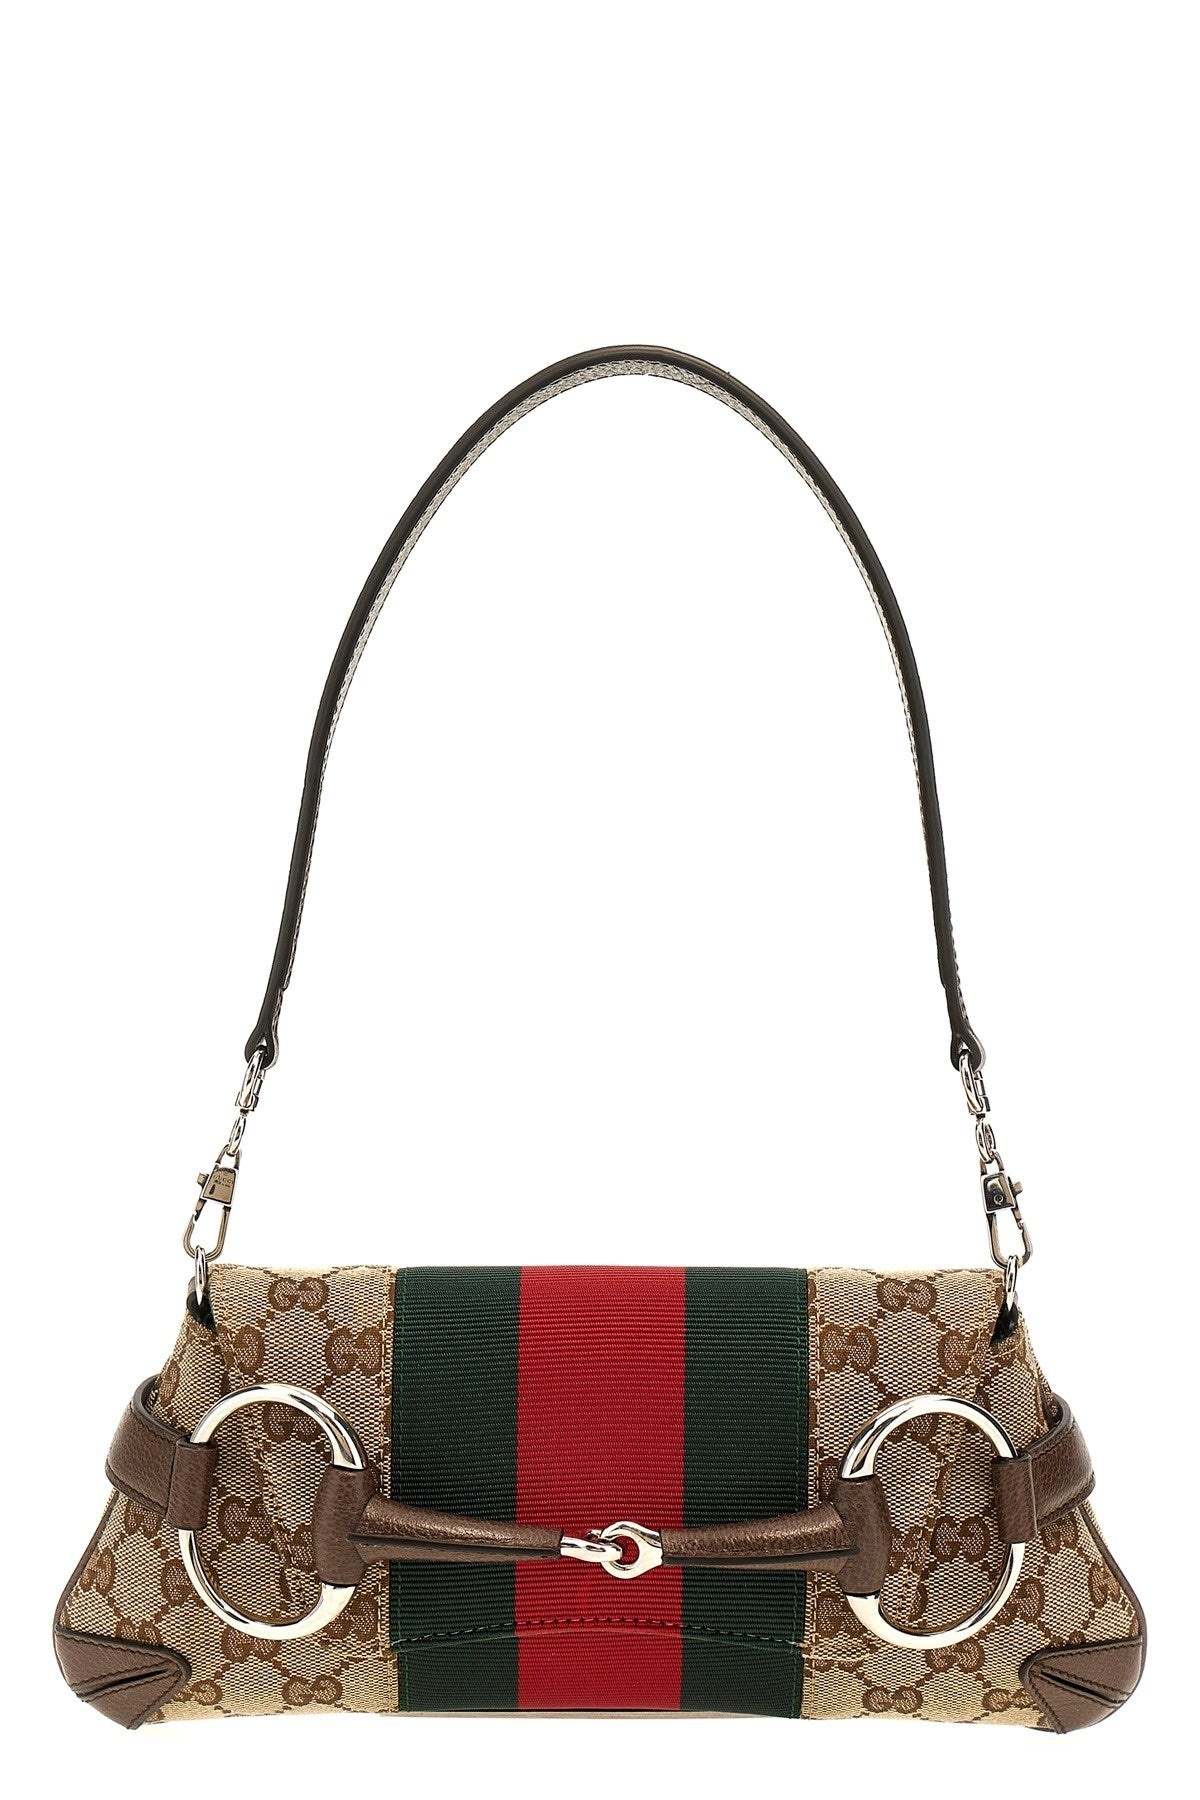 Gucci Women 'Horsebit Chain' Small Shoulder Bag - 1